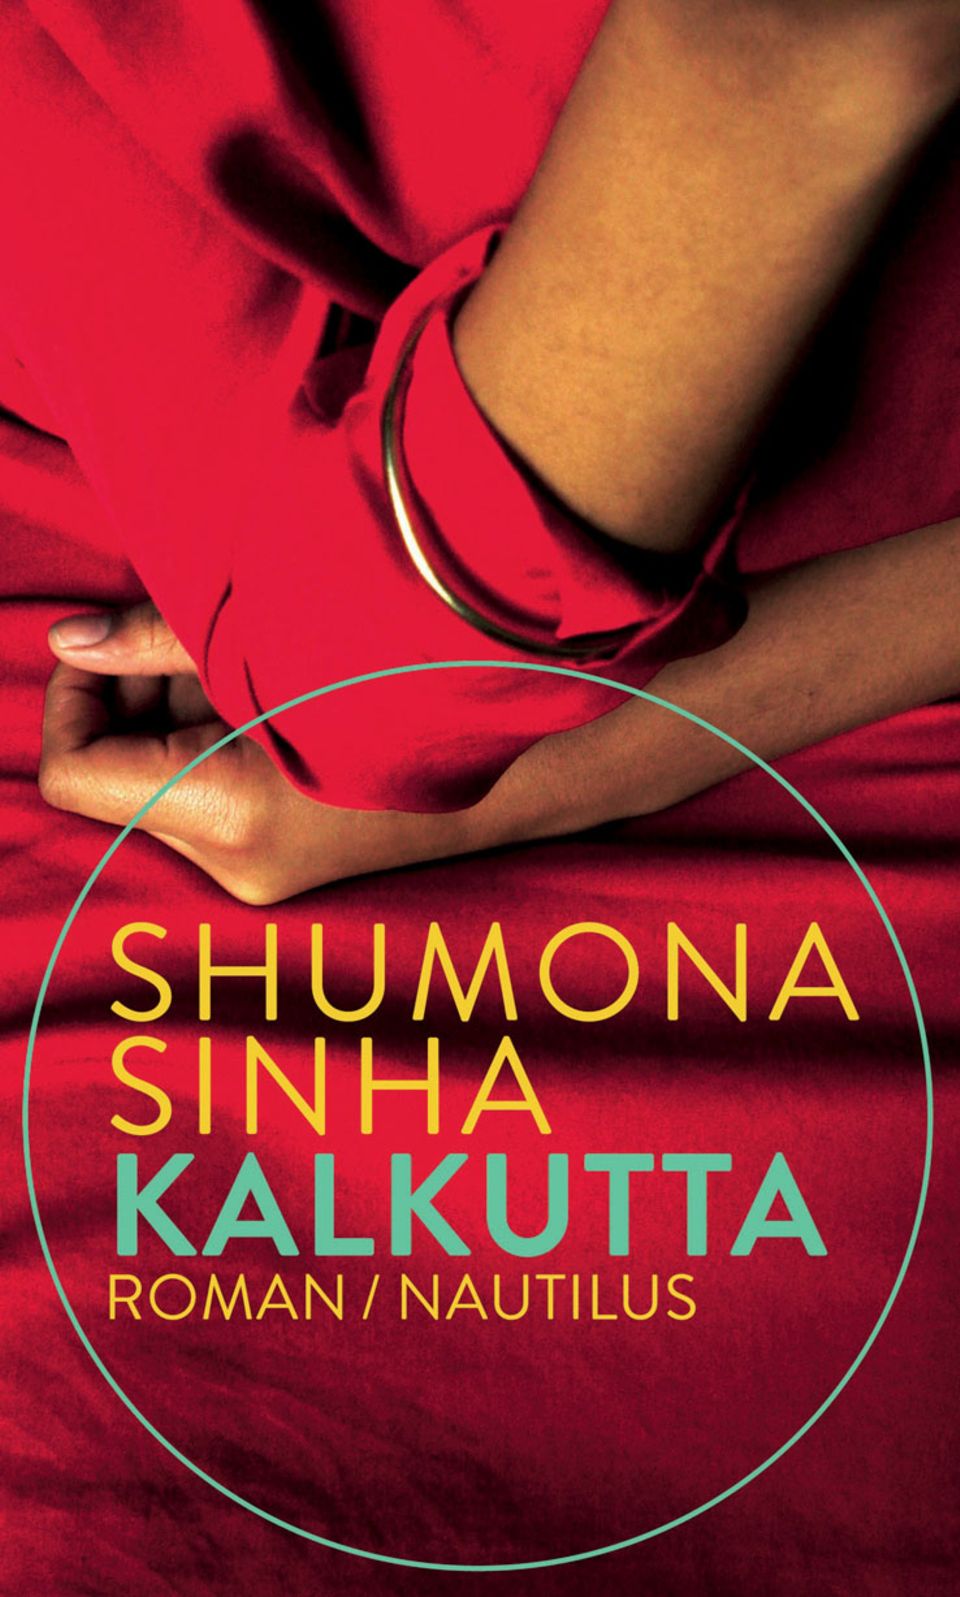 Shumona Sinhas "Erschlagt die Armen" wurde mit dem internationalen Literaturpreis 2016 ausgezeichnet, jetzt legt die indische Autorin nach. In "Kalkutta" kehrt eine Tochter nach dem Tod des Vaters in ihr Elternhaus zurück und streift durch die verlassenen Räume. Eine rote Decke erinnert sie zum Beispiel an die Geborgenheit der Kindheit, aber auch daran, wie ihr Vater eine Pistole darin versteckte. Sinha verknüpft geschickt die Schicksale der Familie mit der politischen Geschichte Westbengalens. Ein Buch, in dem kein Wort zu viel steht, poetisch und doch präzise. (192 S., 20 Euro, Edition Nautilus) Hier könnt ihr das Buch bestellen